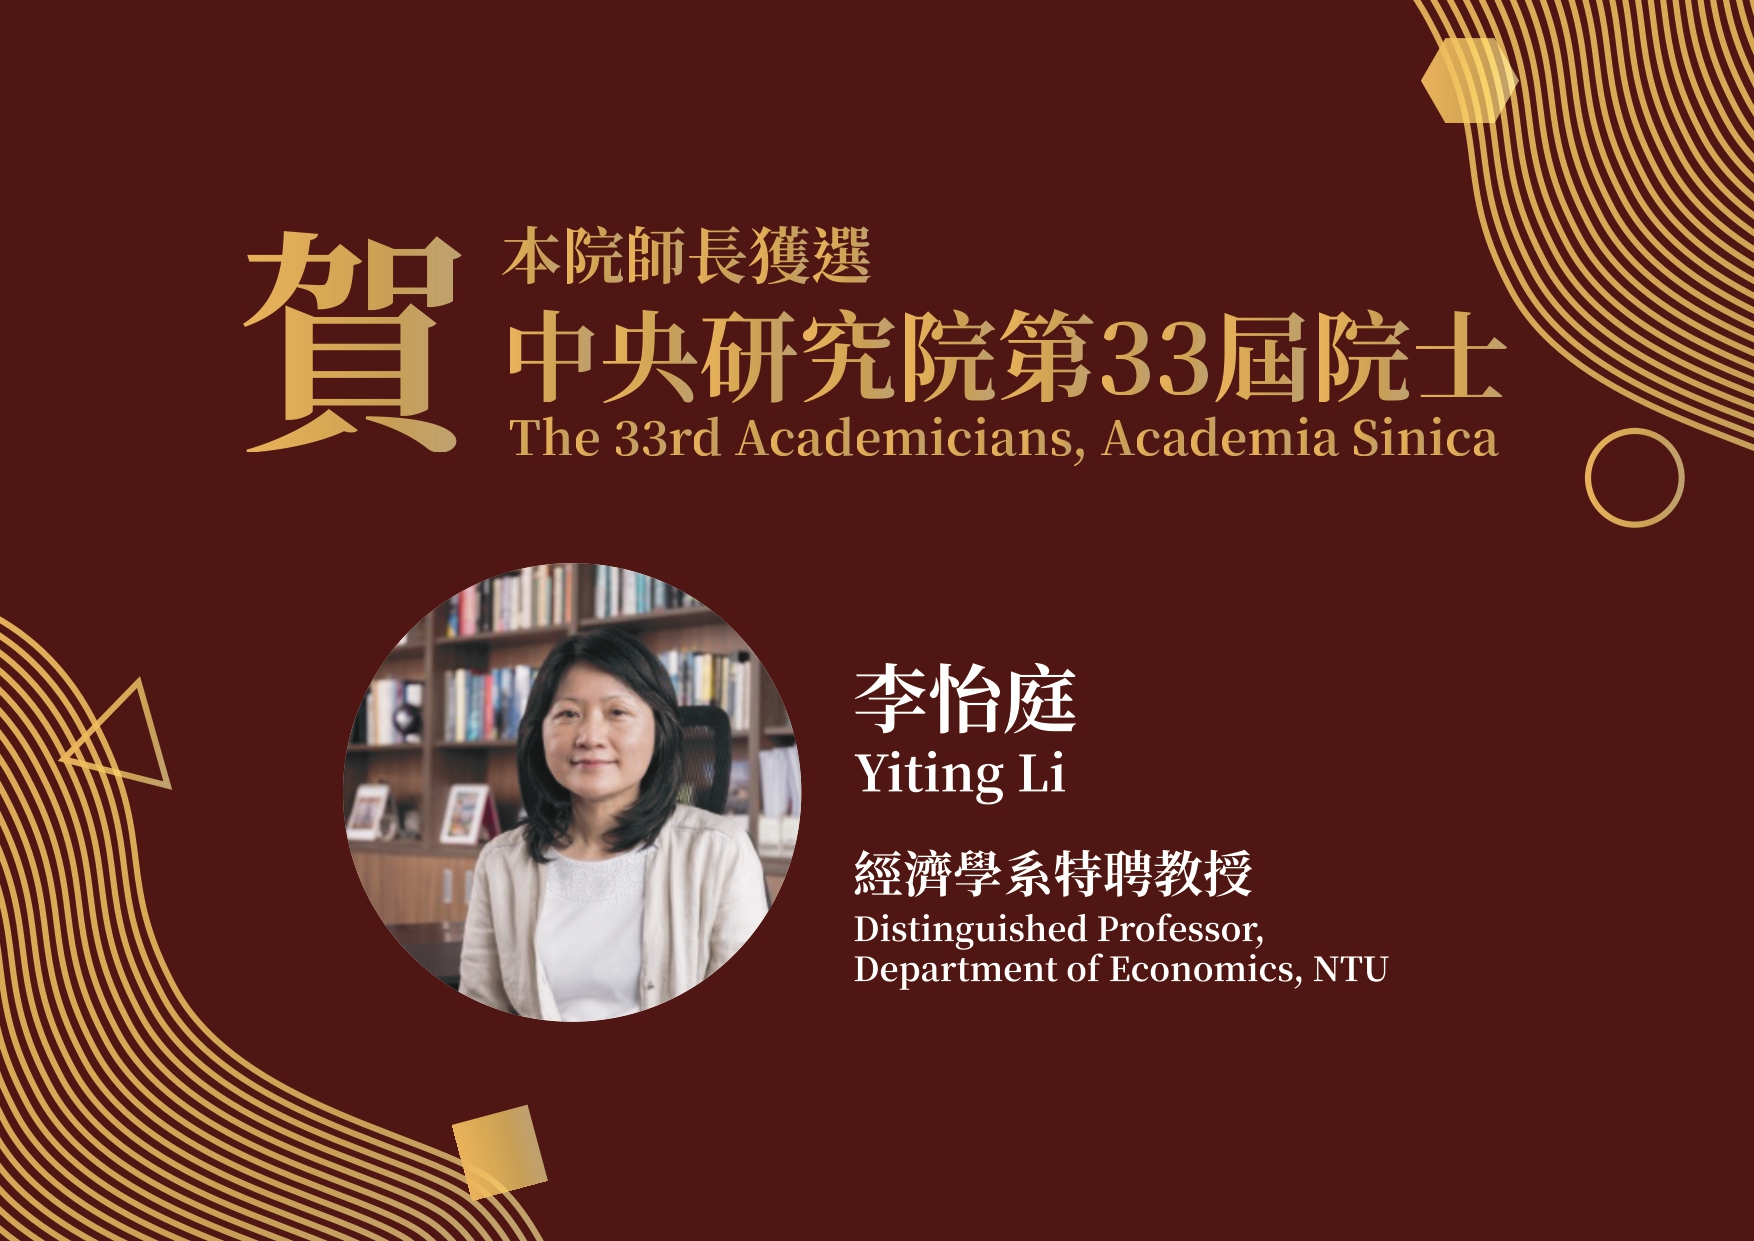 Congratulations! Yiting Li Elected as the 33rd Academicians of Academia Sinica